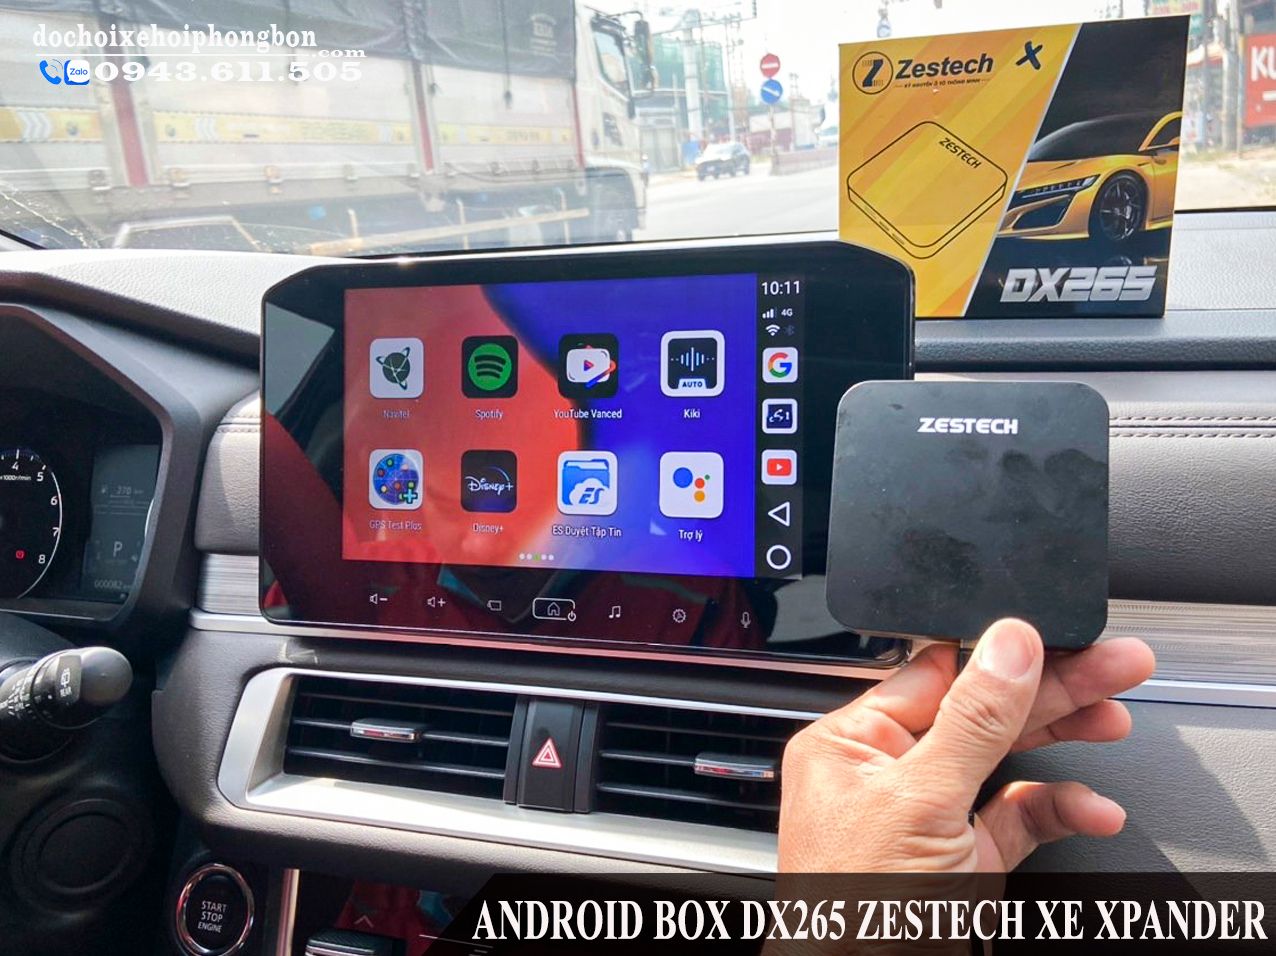 Android Box 265 Zestech Chuyển Màn Hình Zin Thành Android Cho Xe Xpander